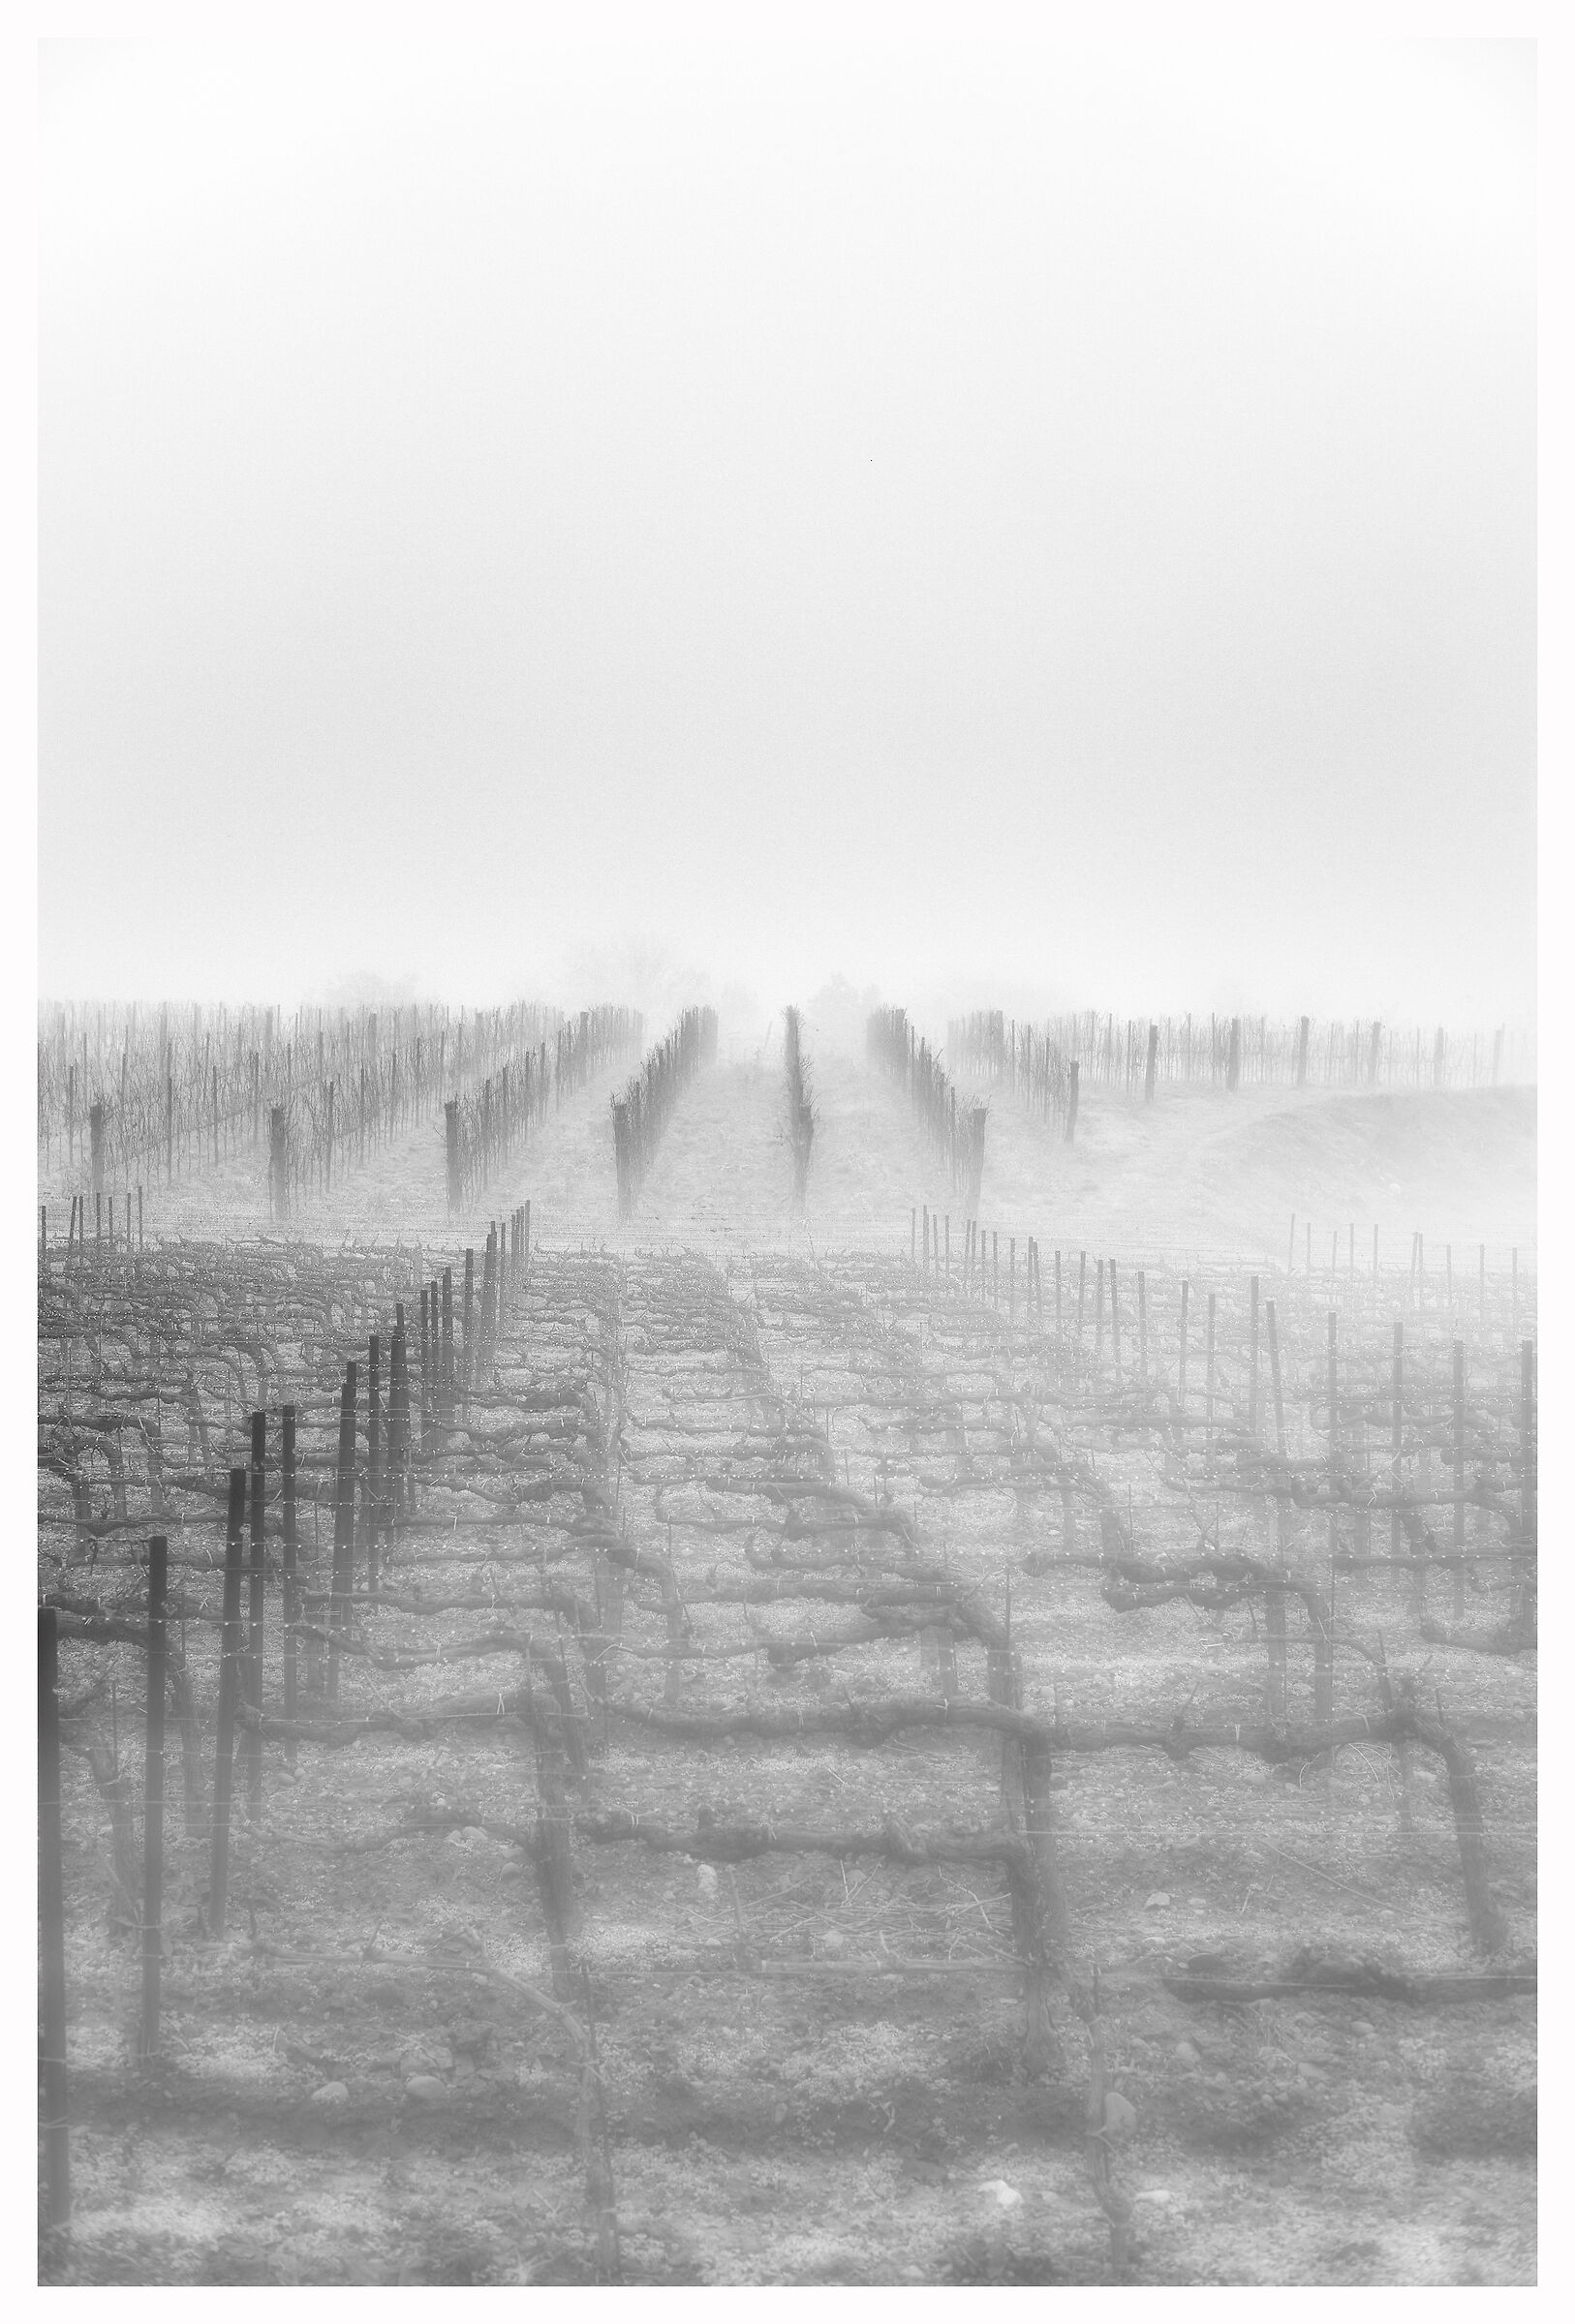 Foggy vineyards...